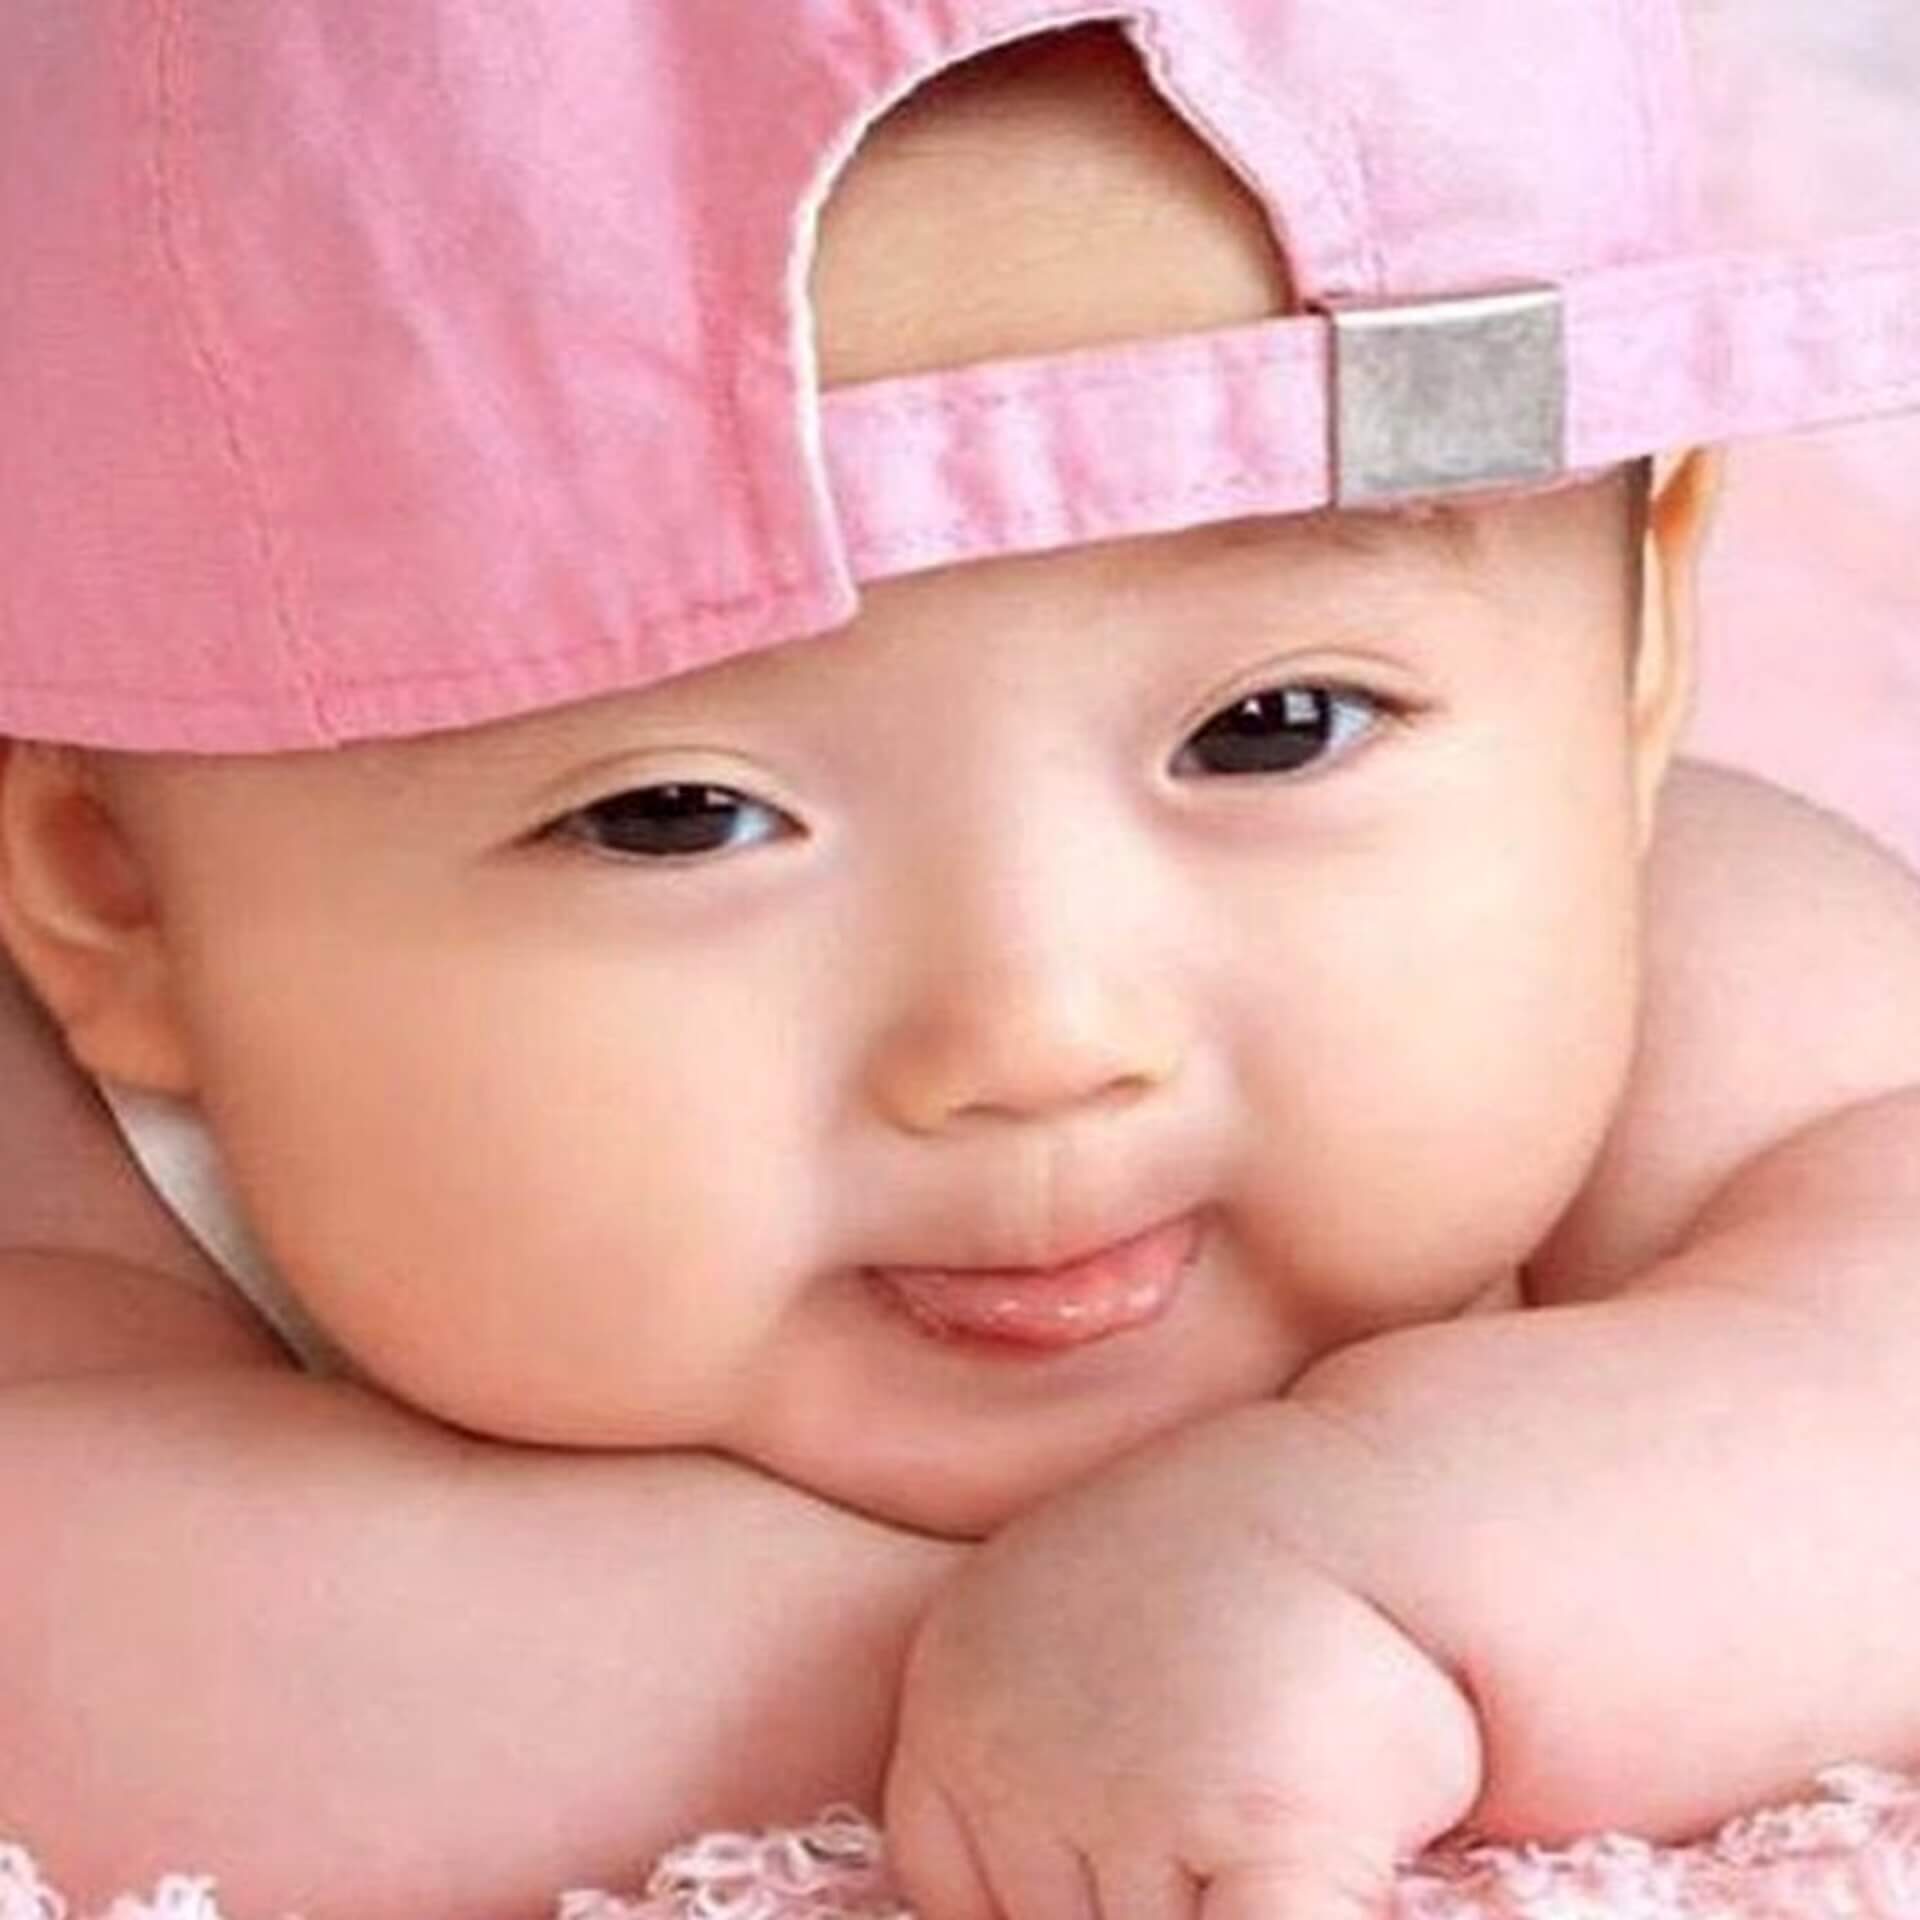 Cute Baby dp Pics Wallpaper Free Download